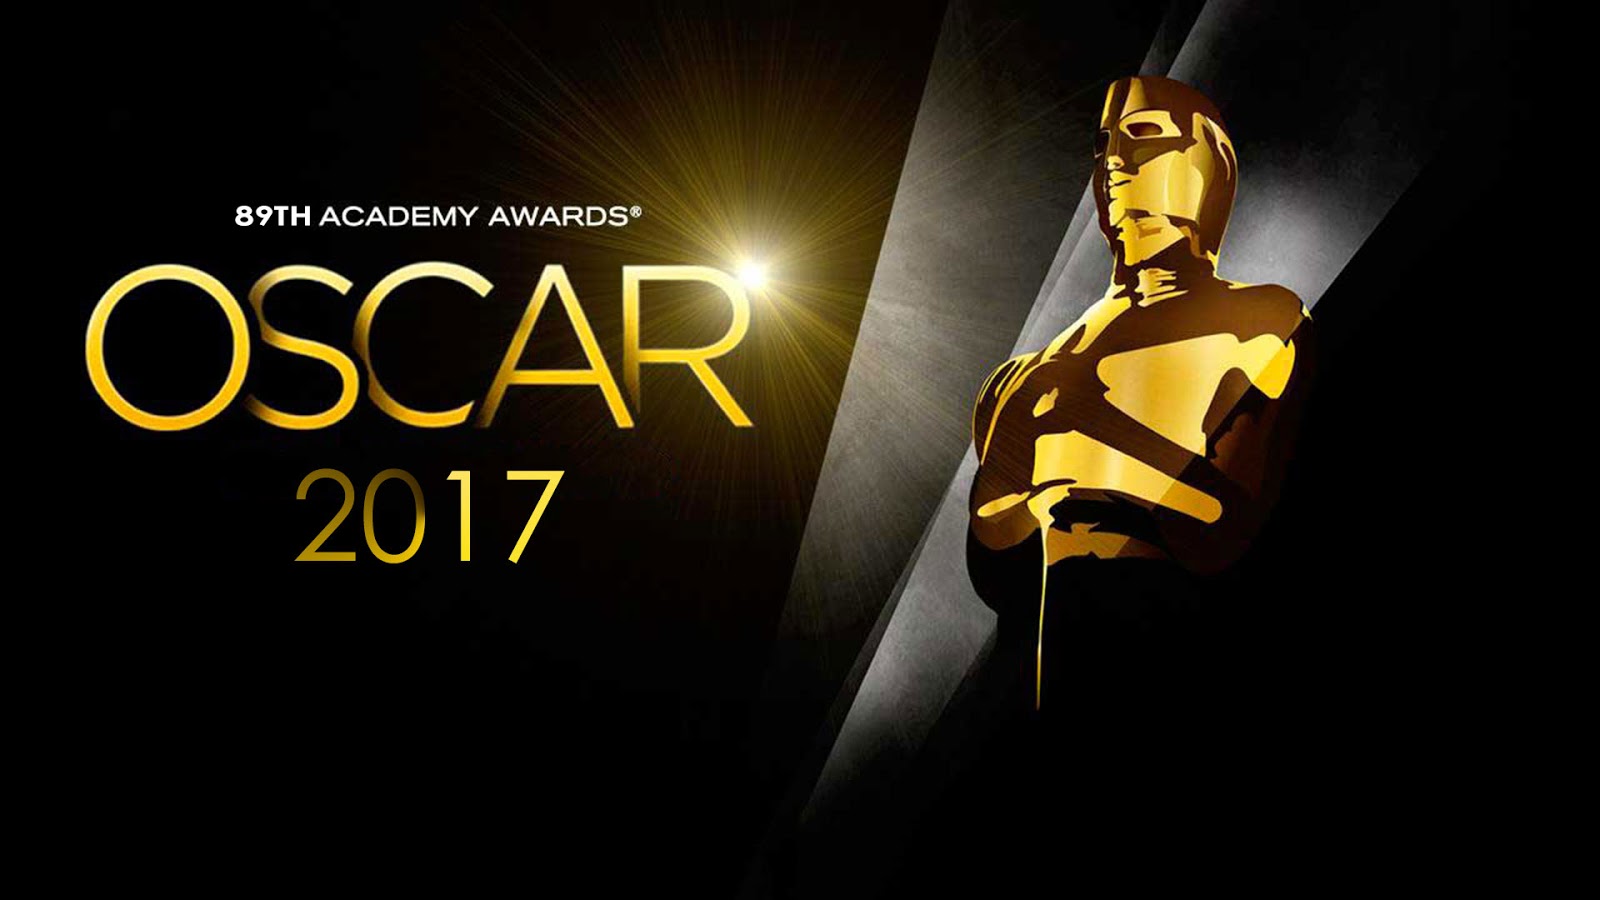 OSCAR 2017: Saiba mais sobre os indicados a Melhor Filme